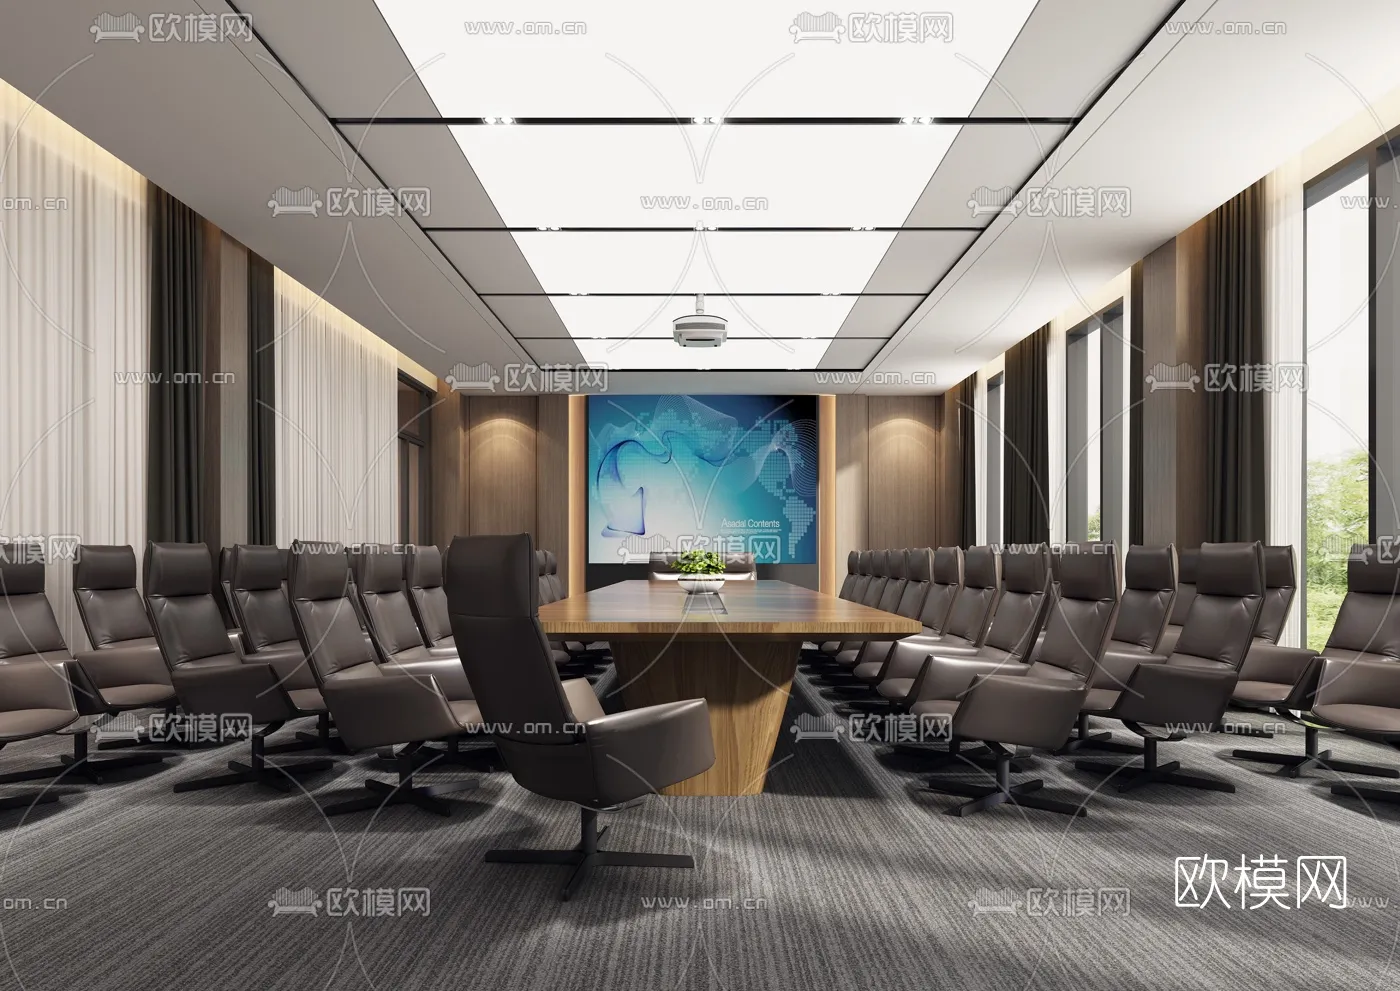 Meeting Room 3D Scenes – 1462